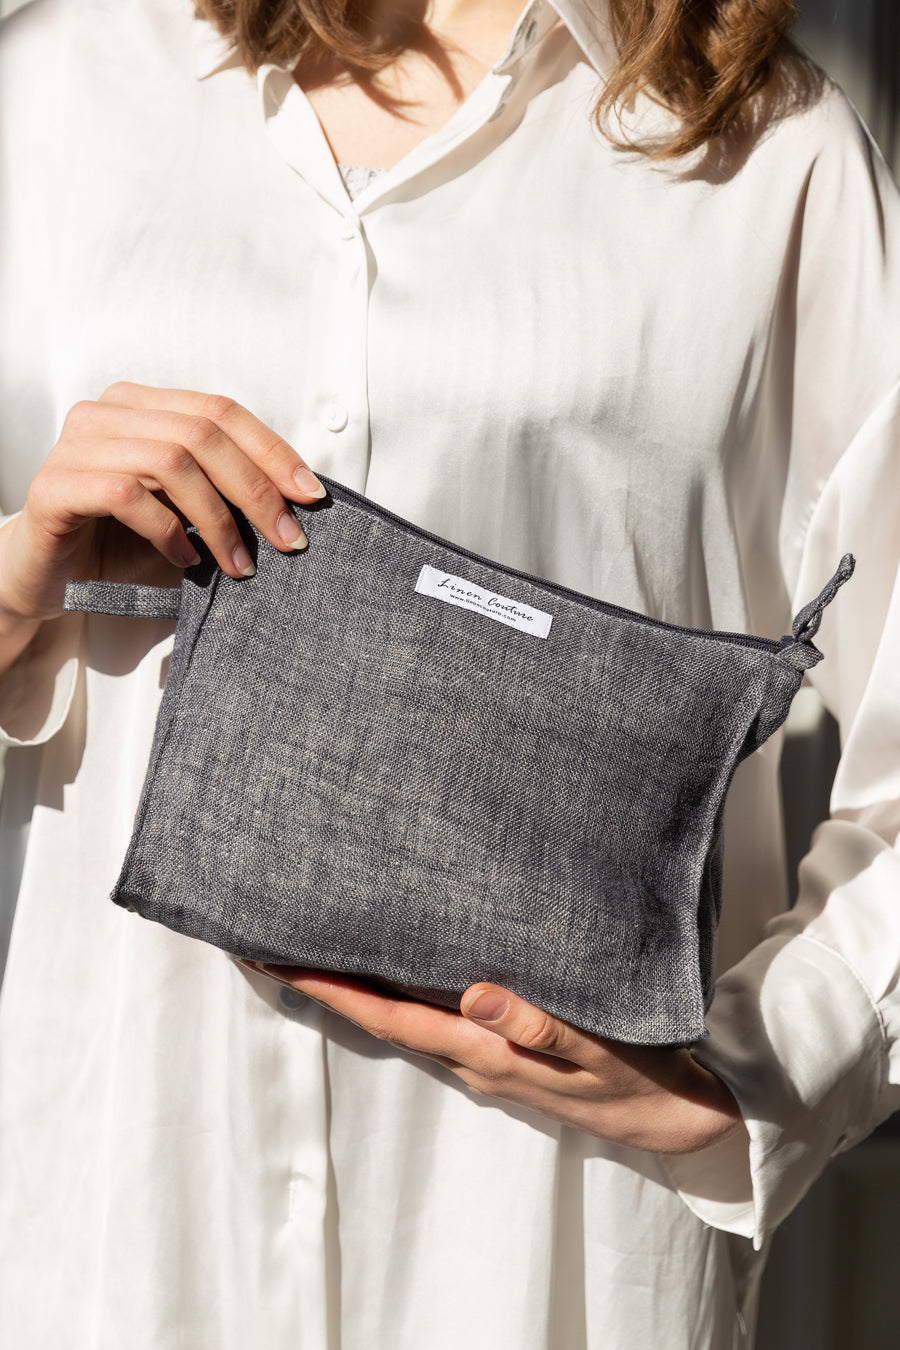 Asphalt grey linen large makeup bag with zipper - Linen Couture Boutique